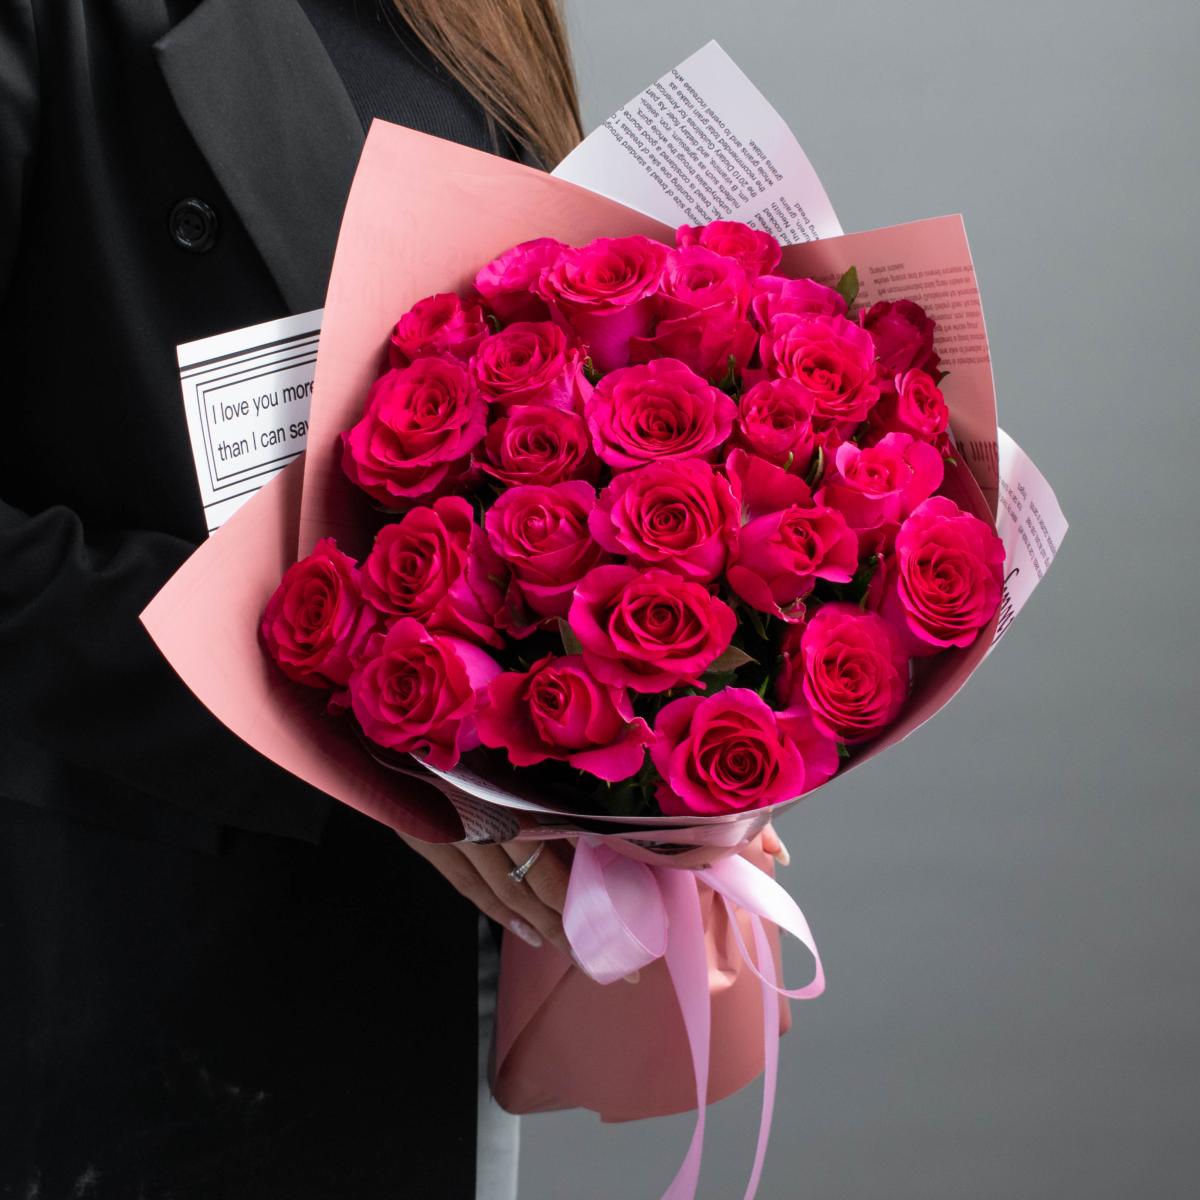 25 розовых роз с доставкой